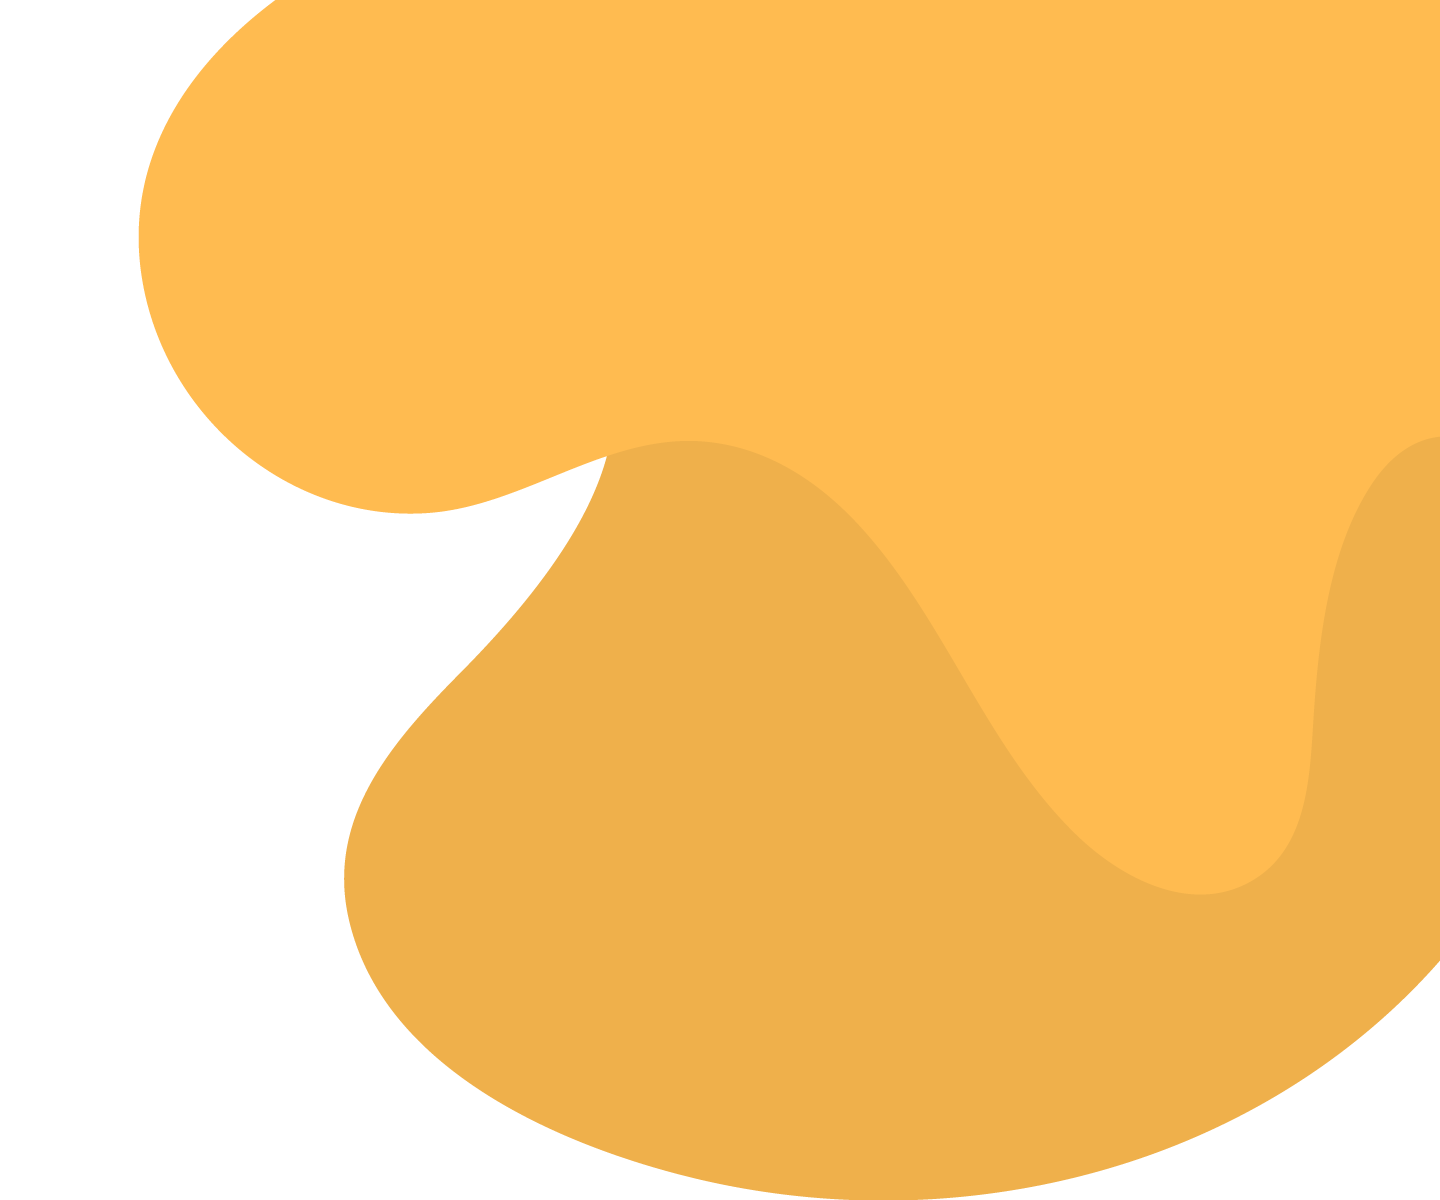 bg-shape-yellow